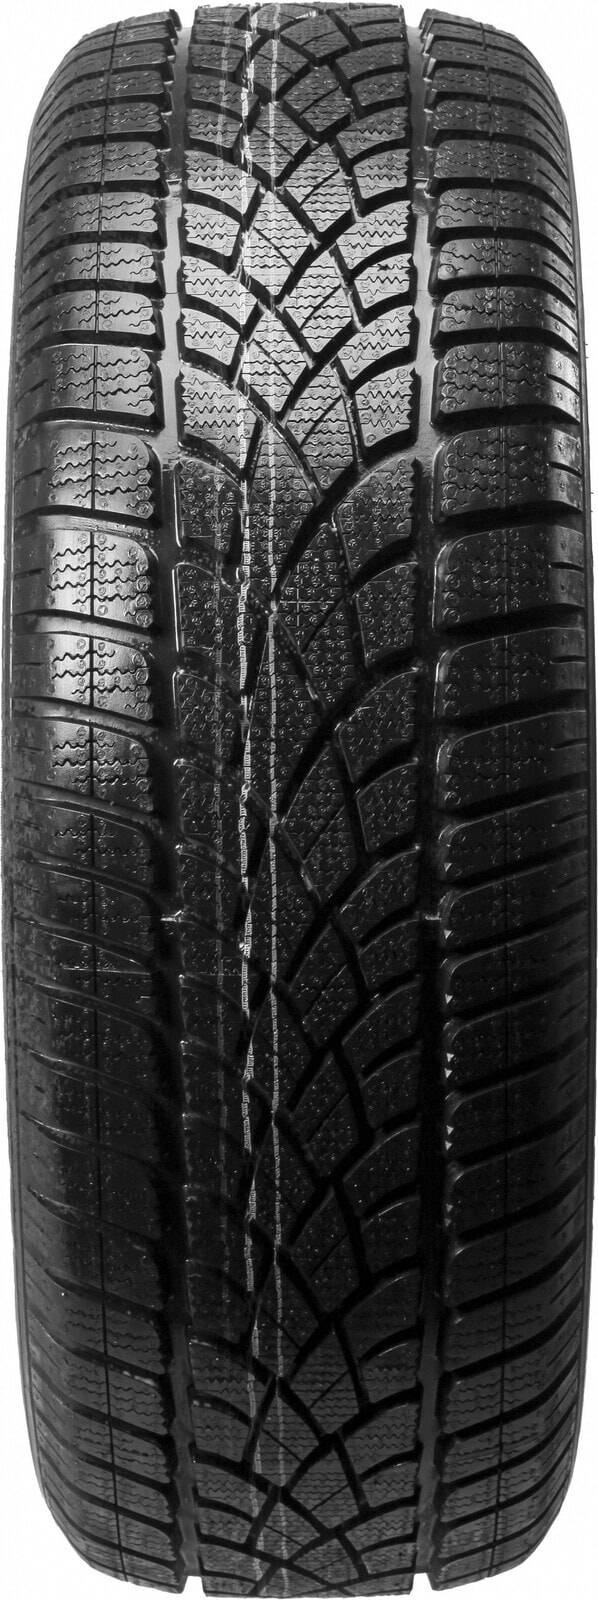 Шины для внедорожника зимние Dunlop SP Winter Sport 3D * ROF 3PMSF M+S DOT22 225/60 R17 99H